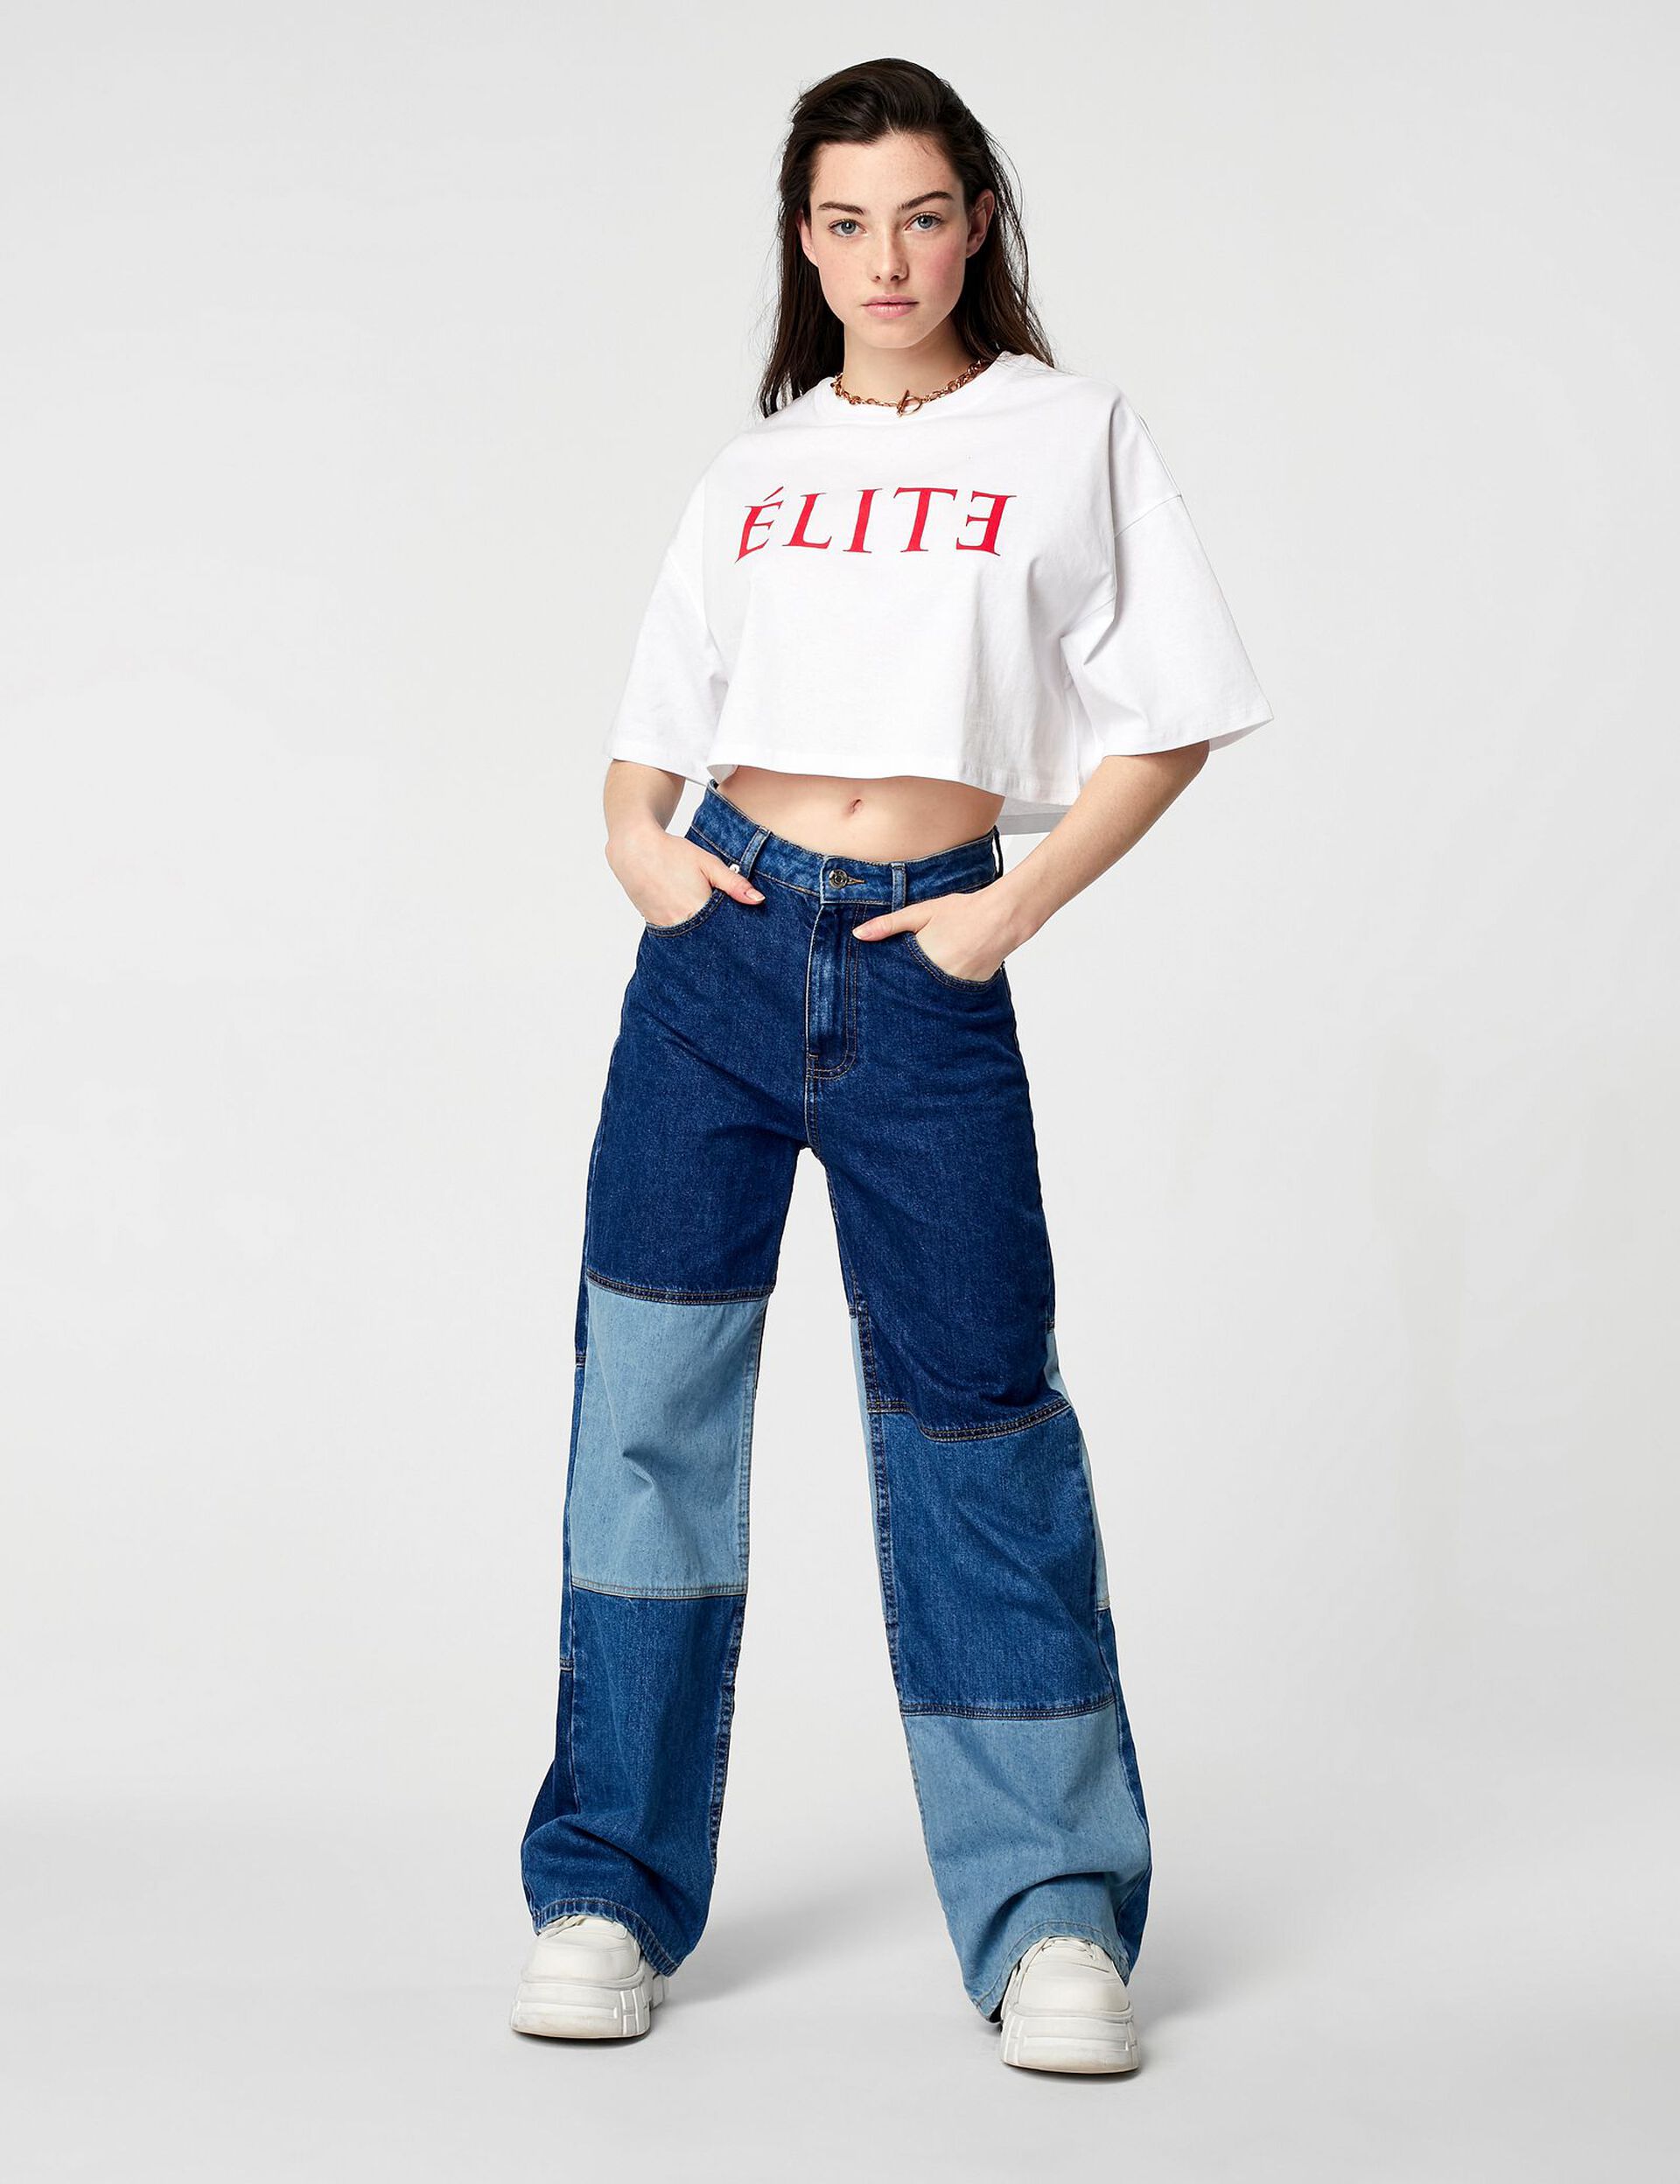 Elite oversized cropped T-shirt